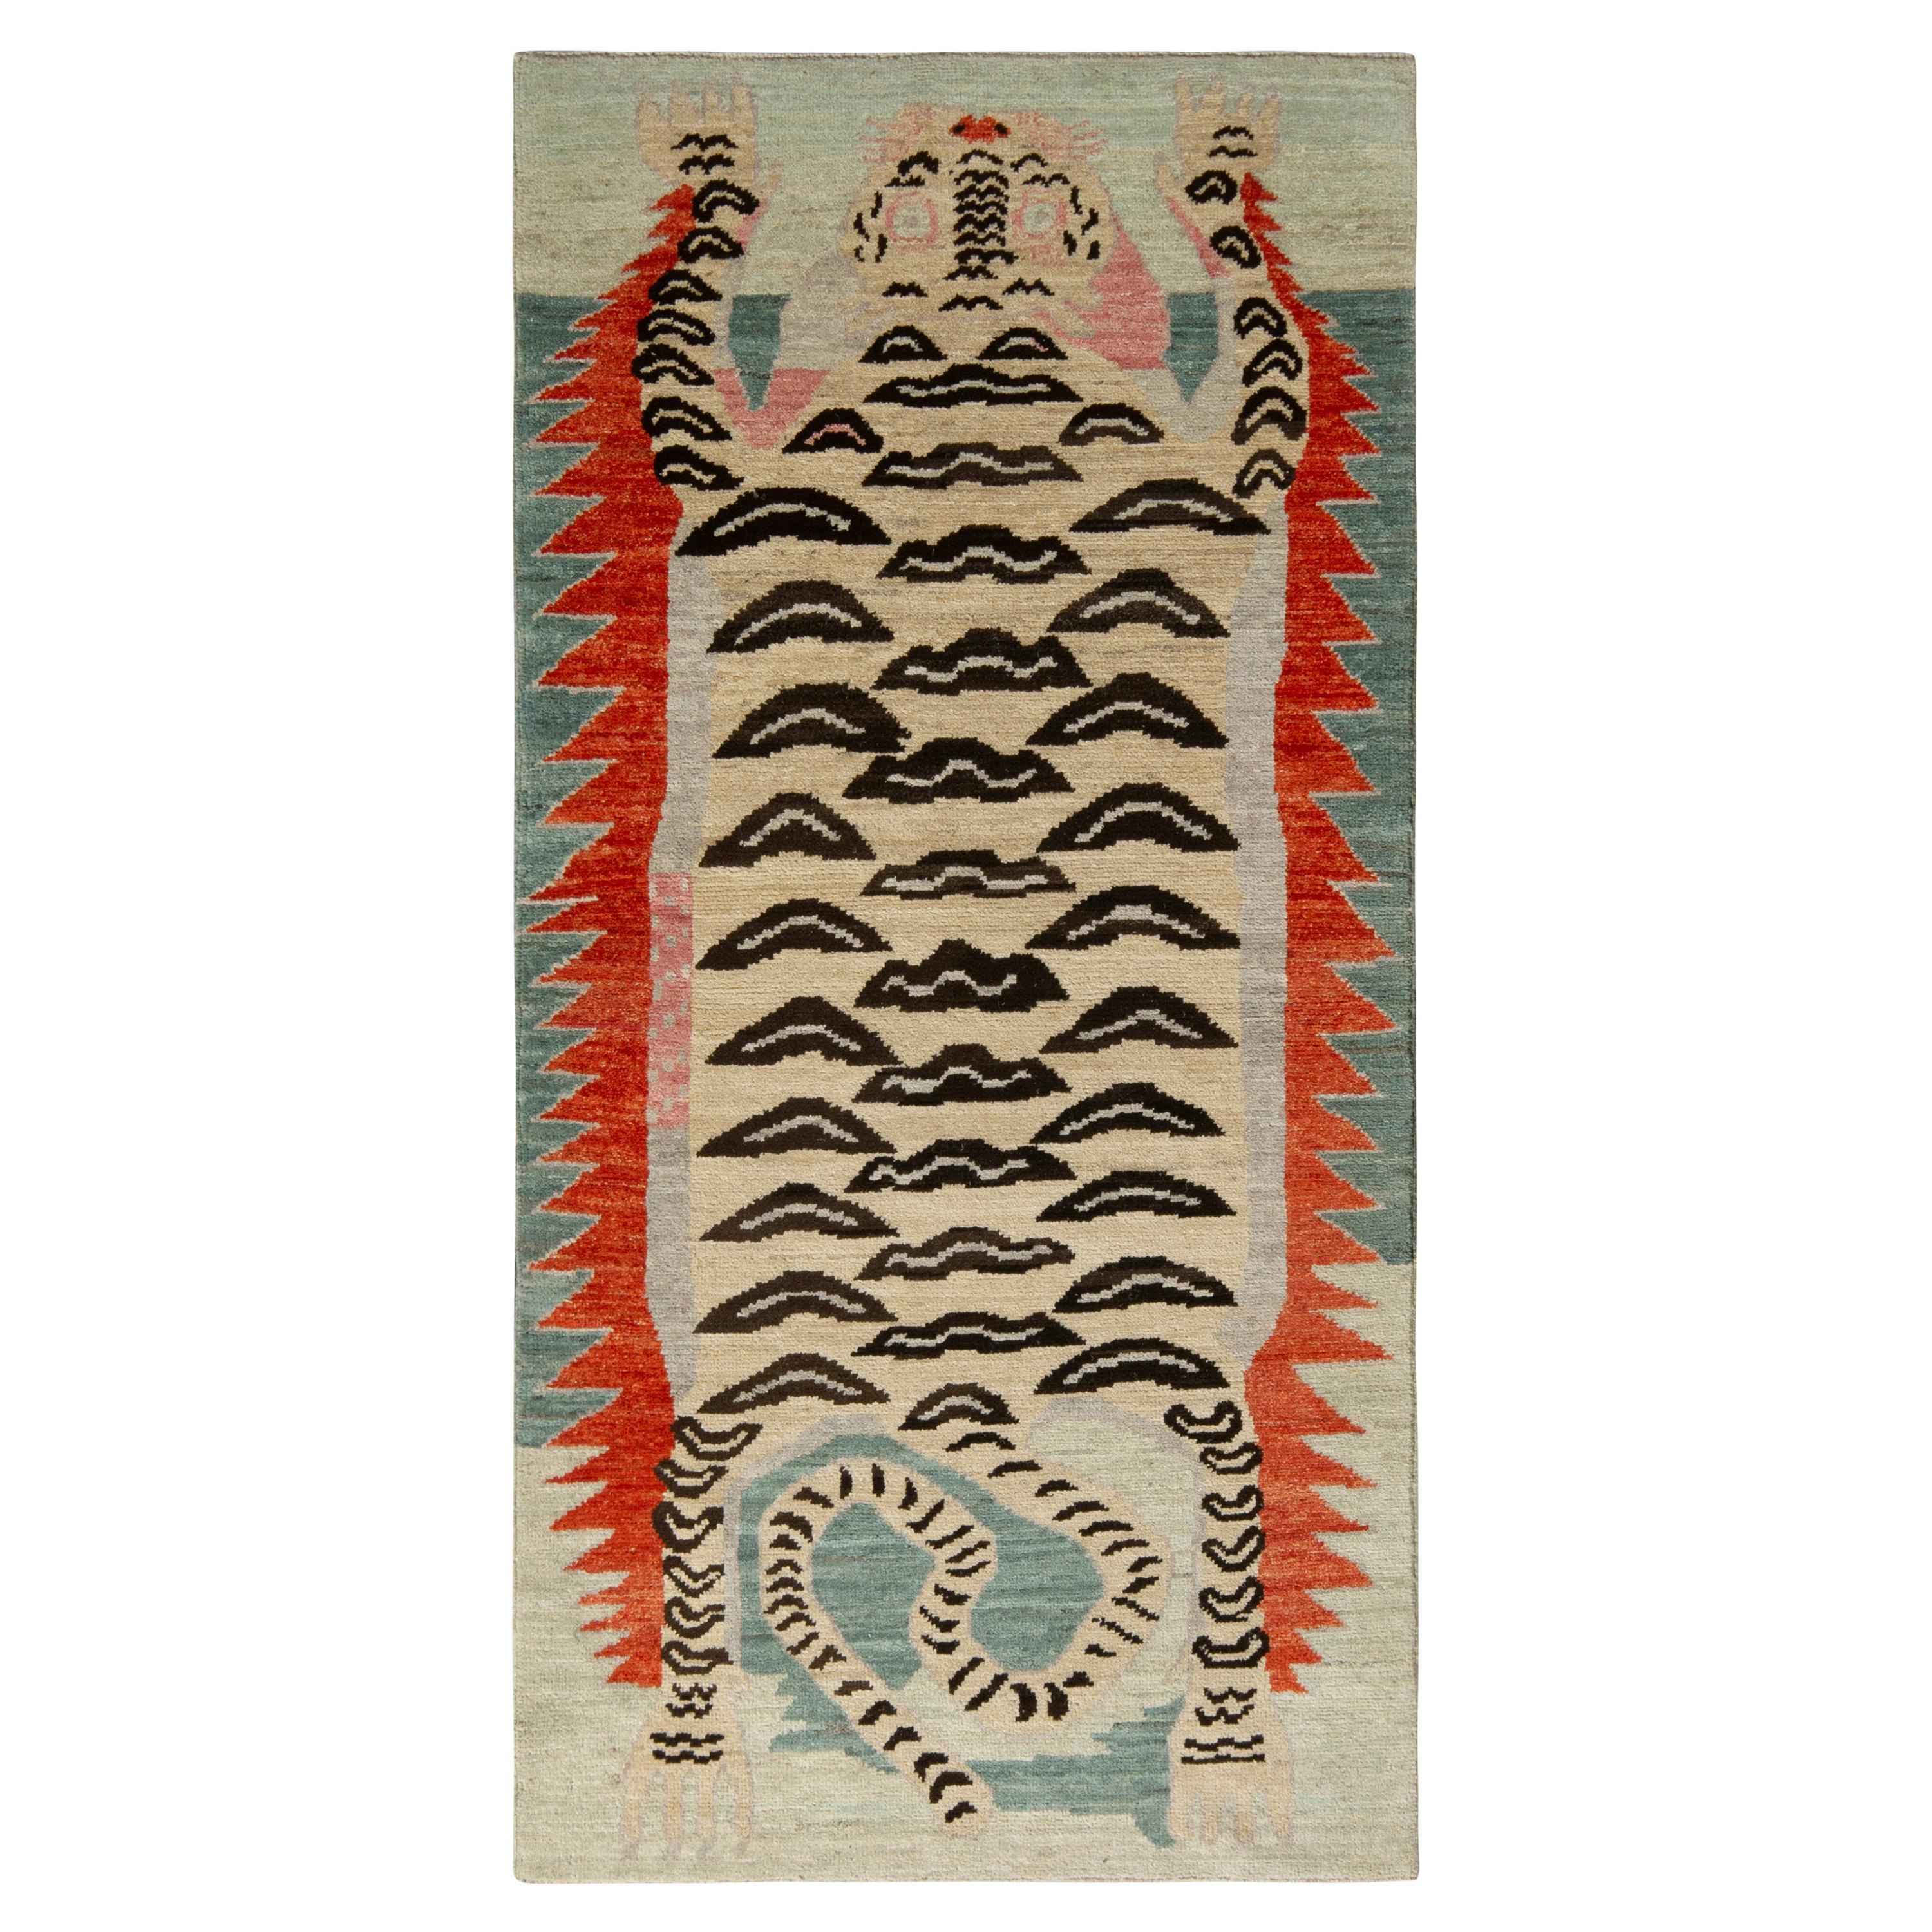 Rug & Kilim’s Tibetan Style Tiger Rug in Beige Brown Pictorial Pattern